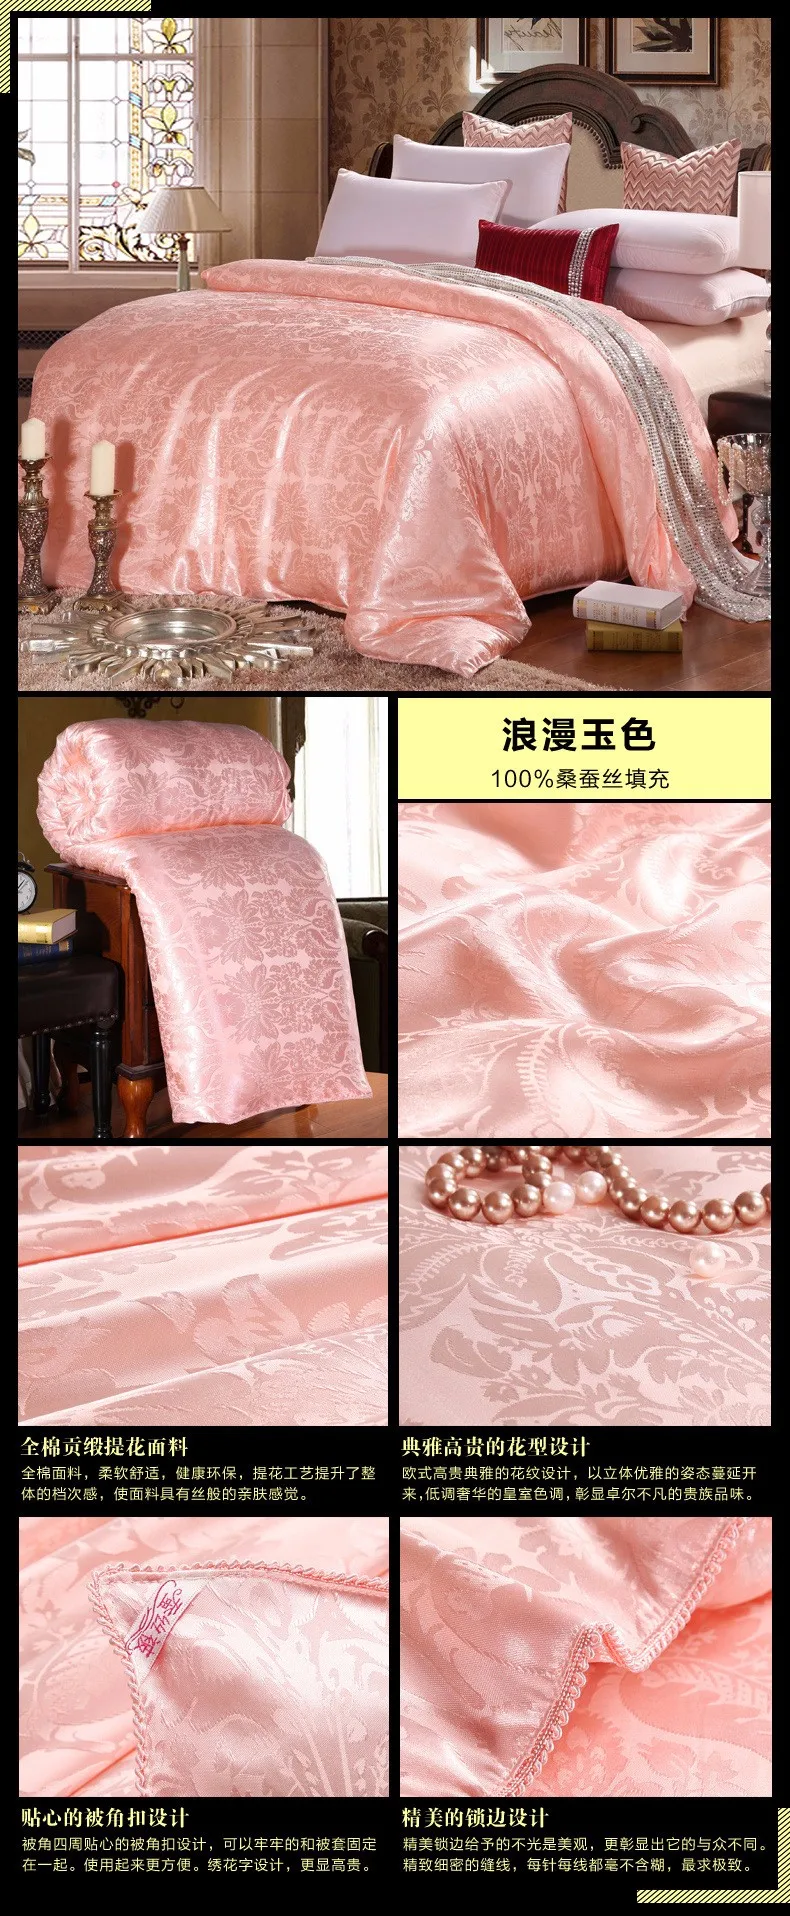 Vescovo идеальное одеяло из натурального шелка тутового шелкопряда, чистый хлопок, четыре сезона, удобное и теплое высококачественное одеяло